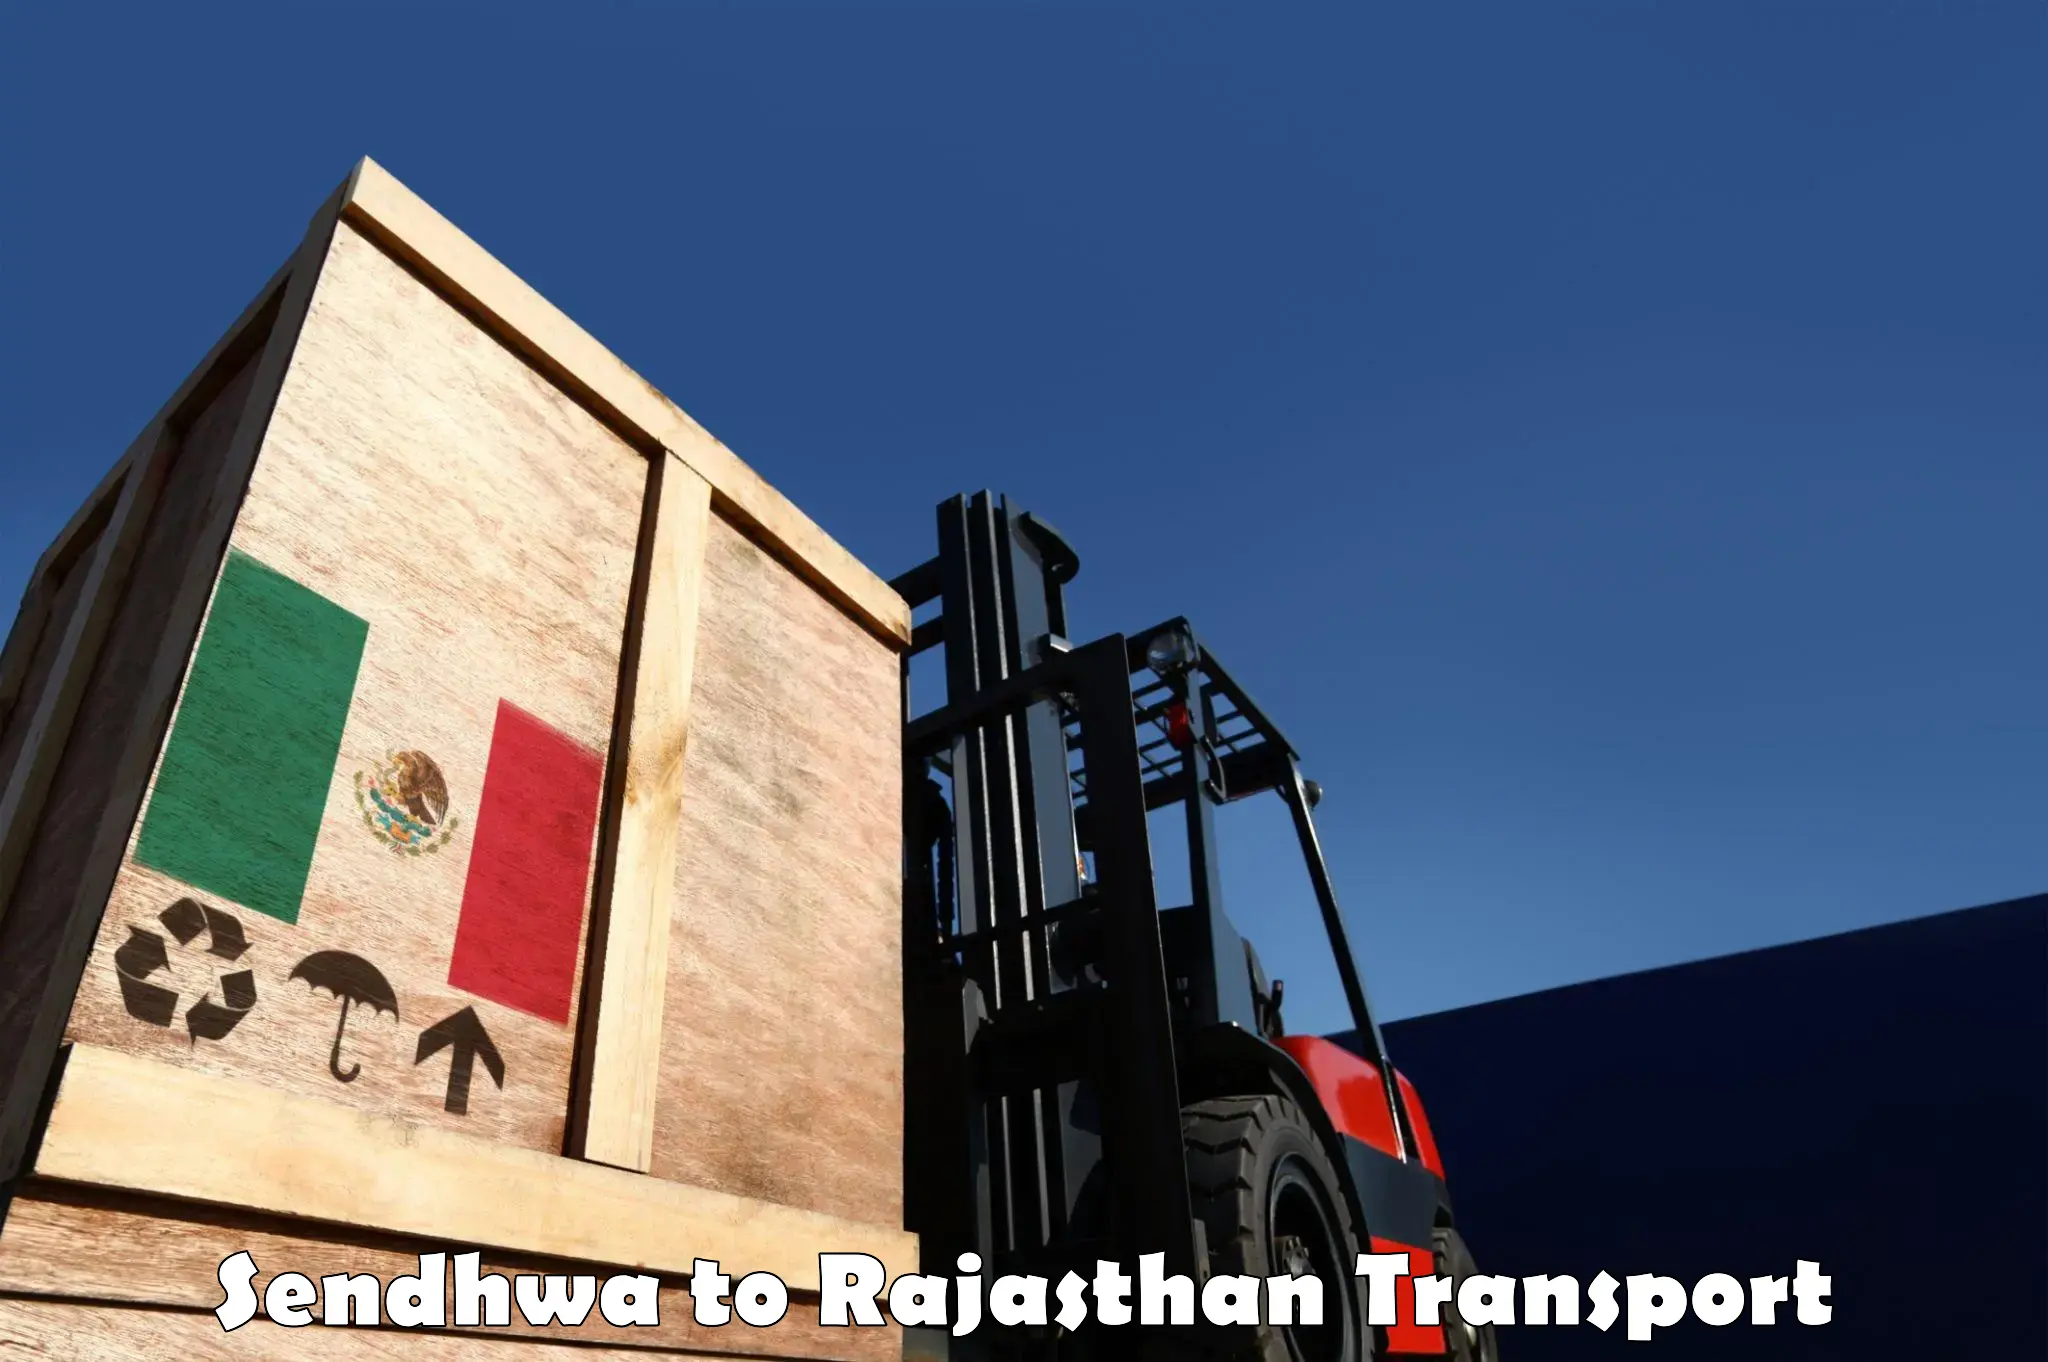 Cargo train transport services Sendhwa to Weir